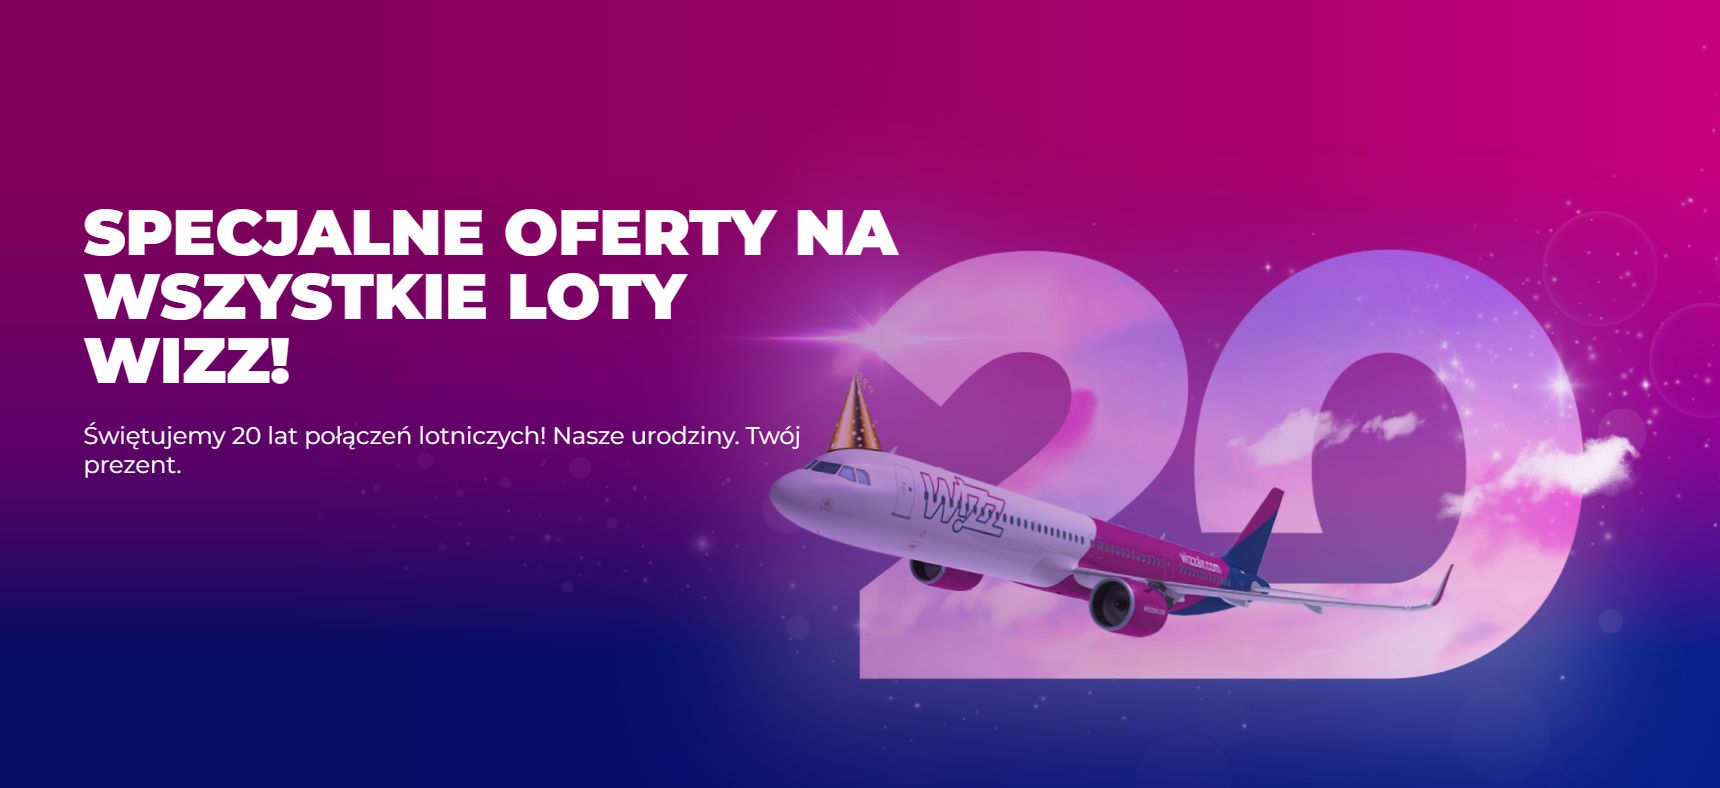 Urodzinowa promocja Wizz Air i… zniżka na wszystkie loty! Madera, Islandia, Wyspy Kanaryjskie, Sycylia, Rzym, Barcelona, Bułgaria, greckie wyspy i duuuużo więcej!